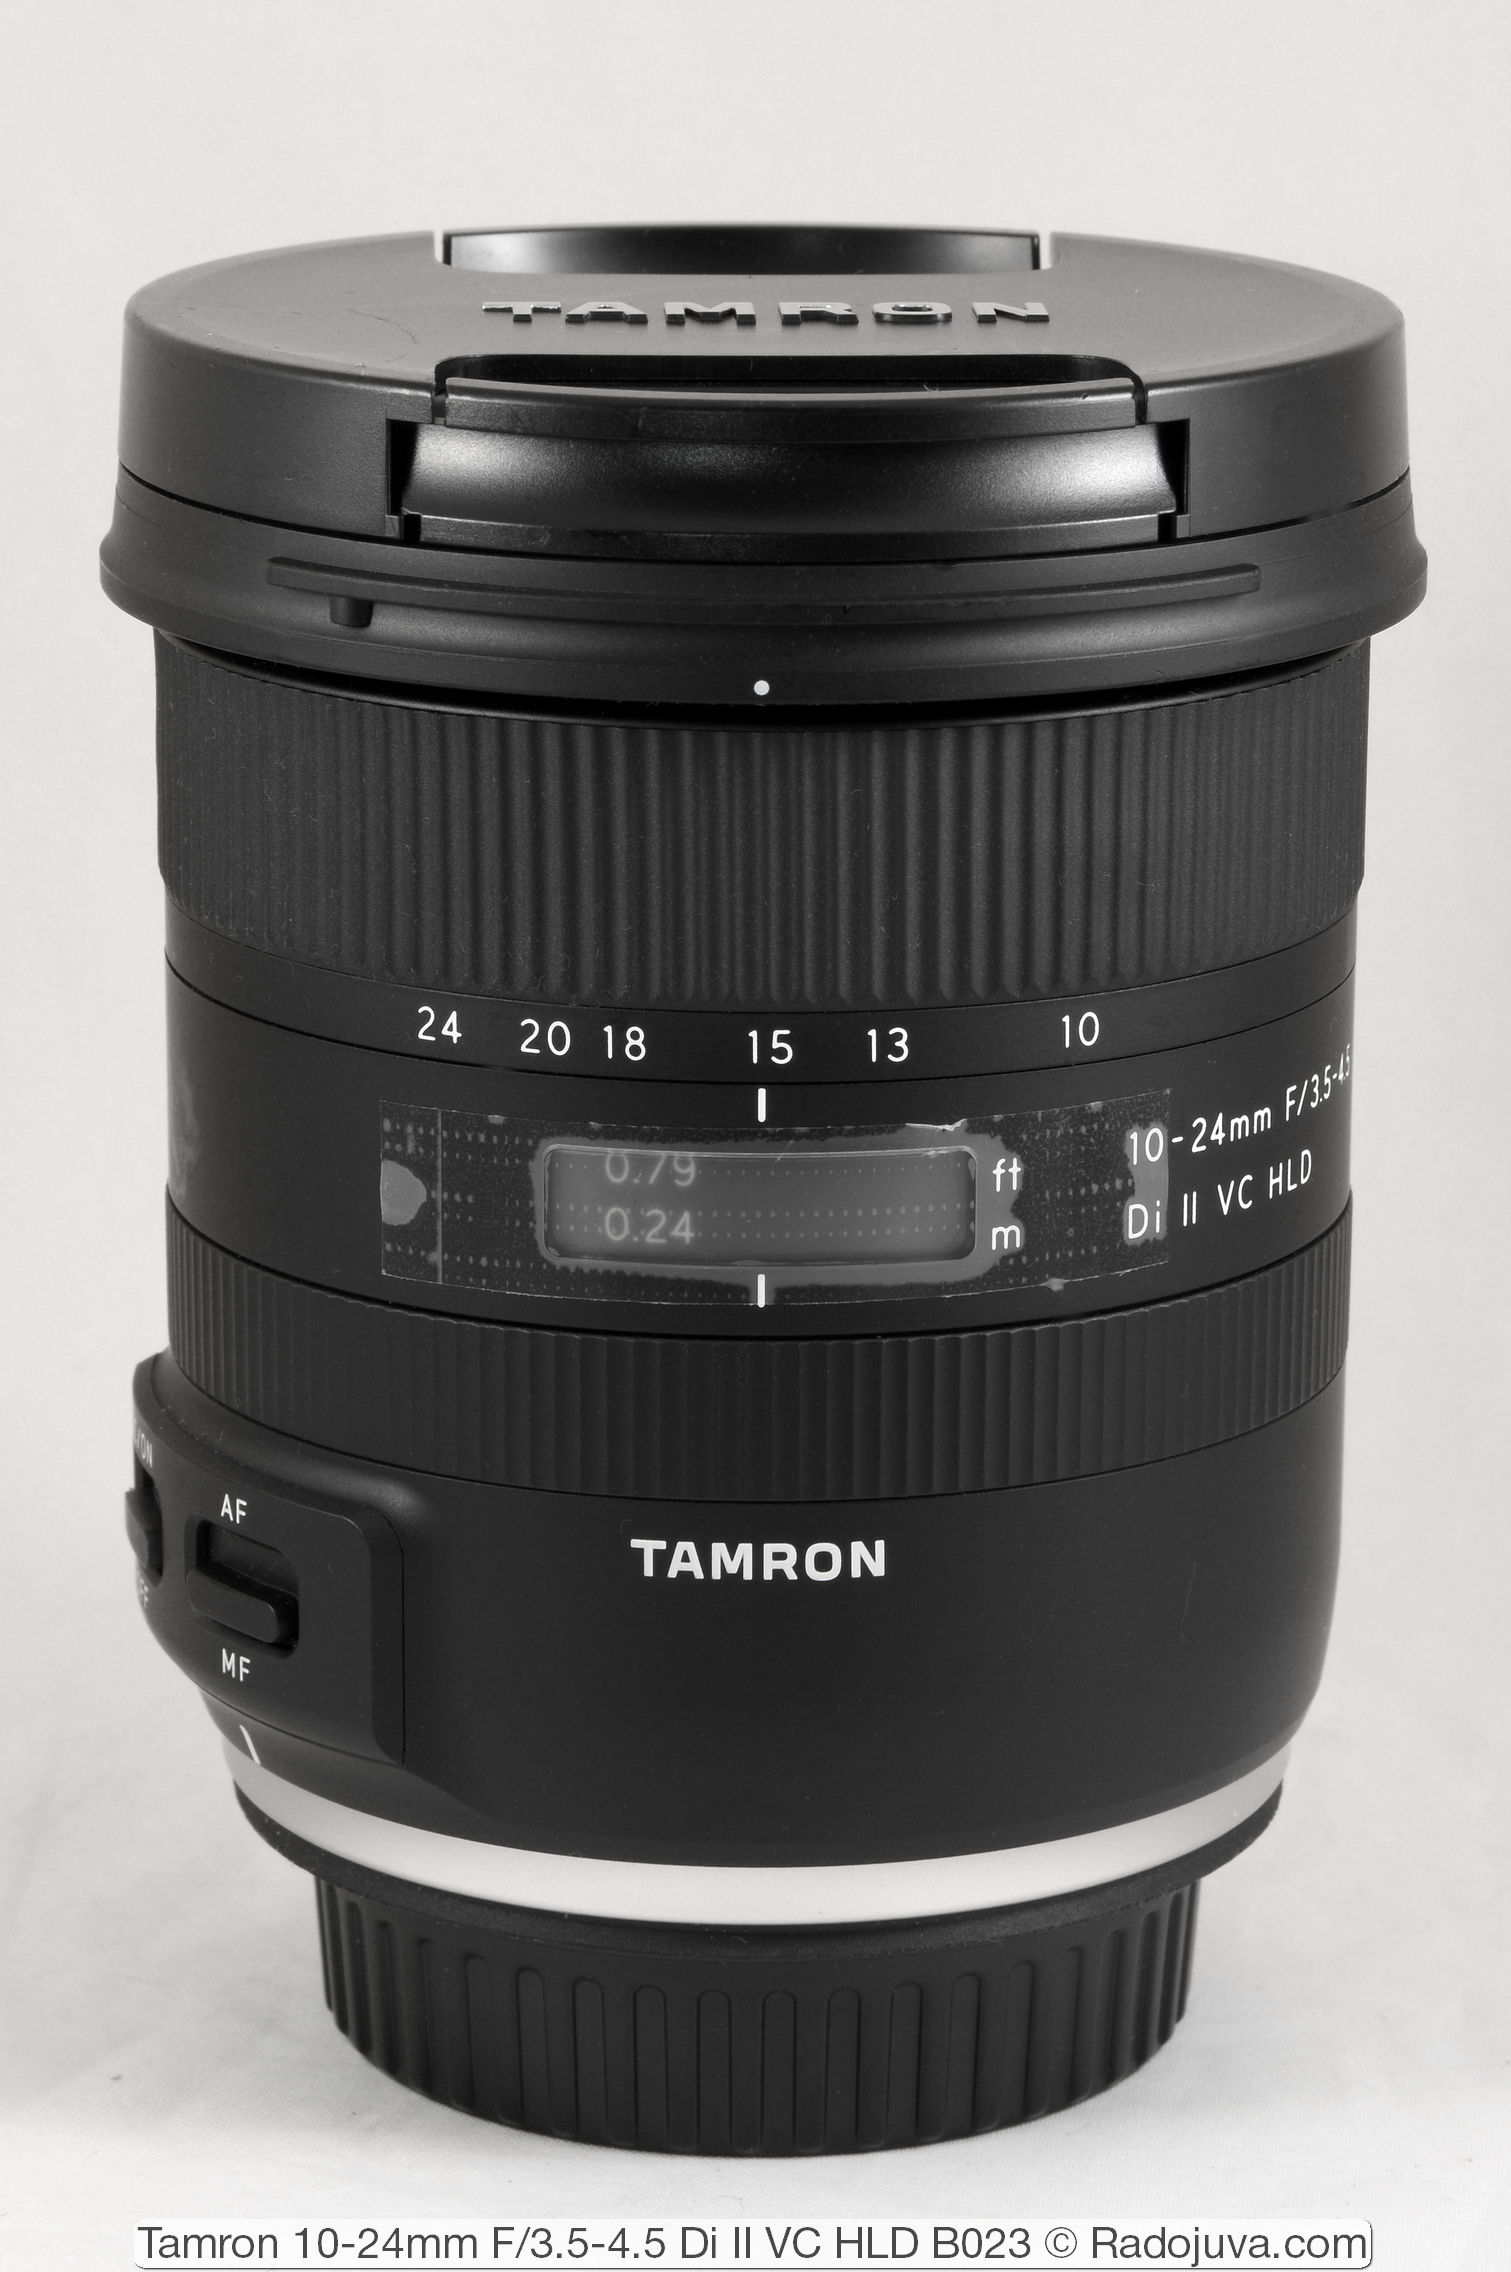 Tamron 10-24mm F/3.5-4.5 Di II VC HLD B023